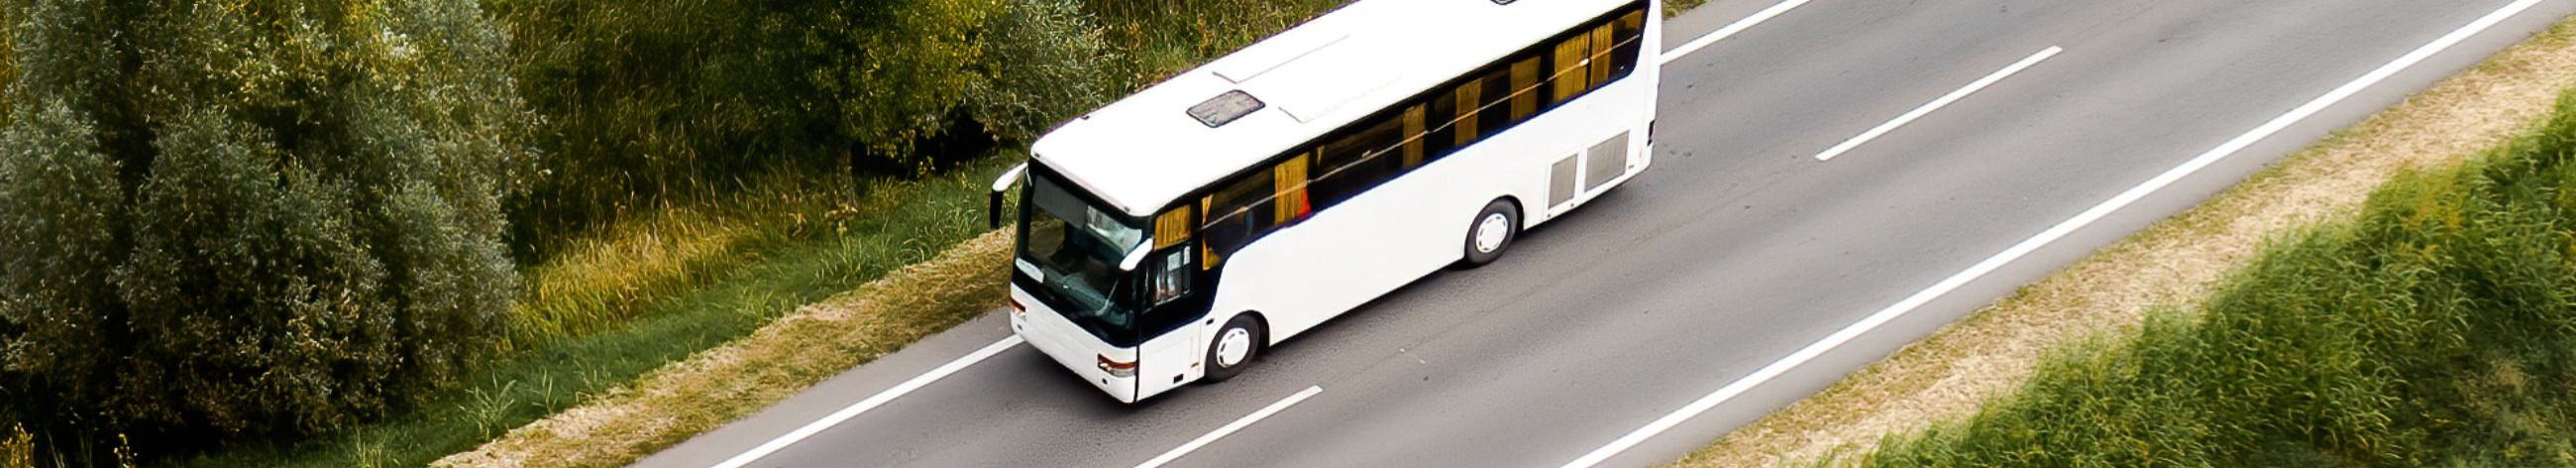 reisijate veoteenus, Grupireisid, kohandatavad reisipaketid, Bussireisid, euroopa reisid, bussijuhi teenus, transpordi teenus, grupireisid euroopas, sõitjate vedu, reisijate transport